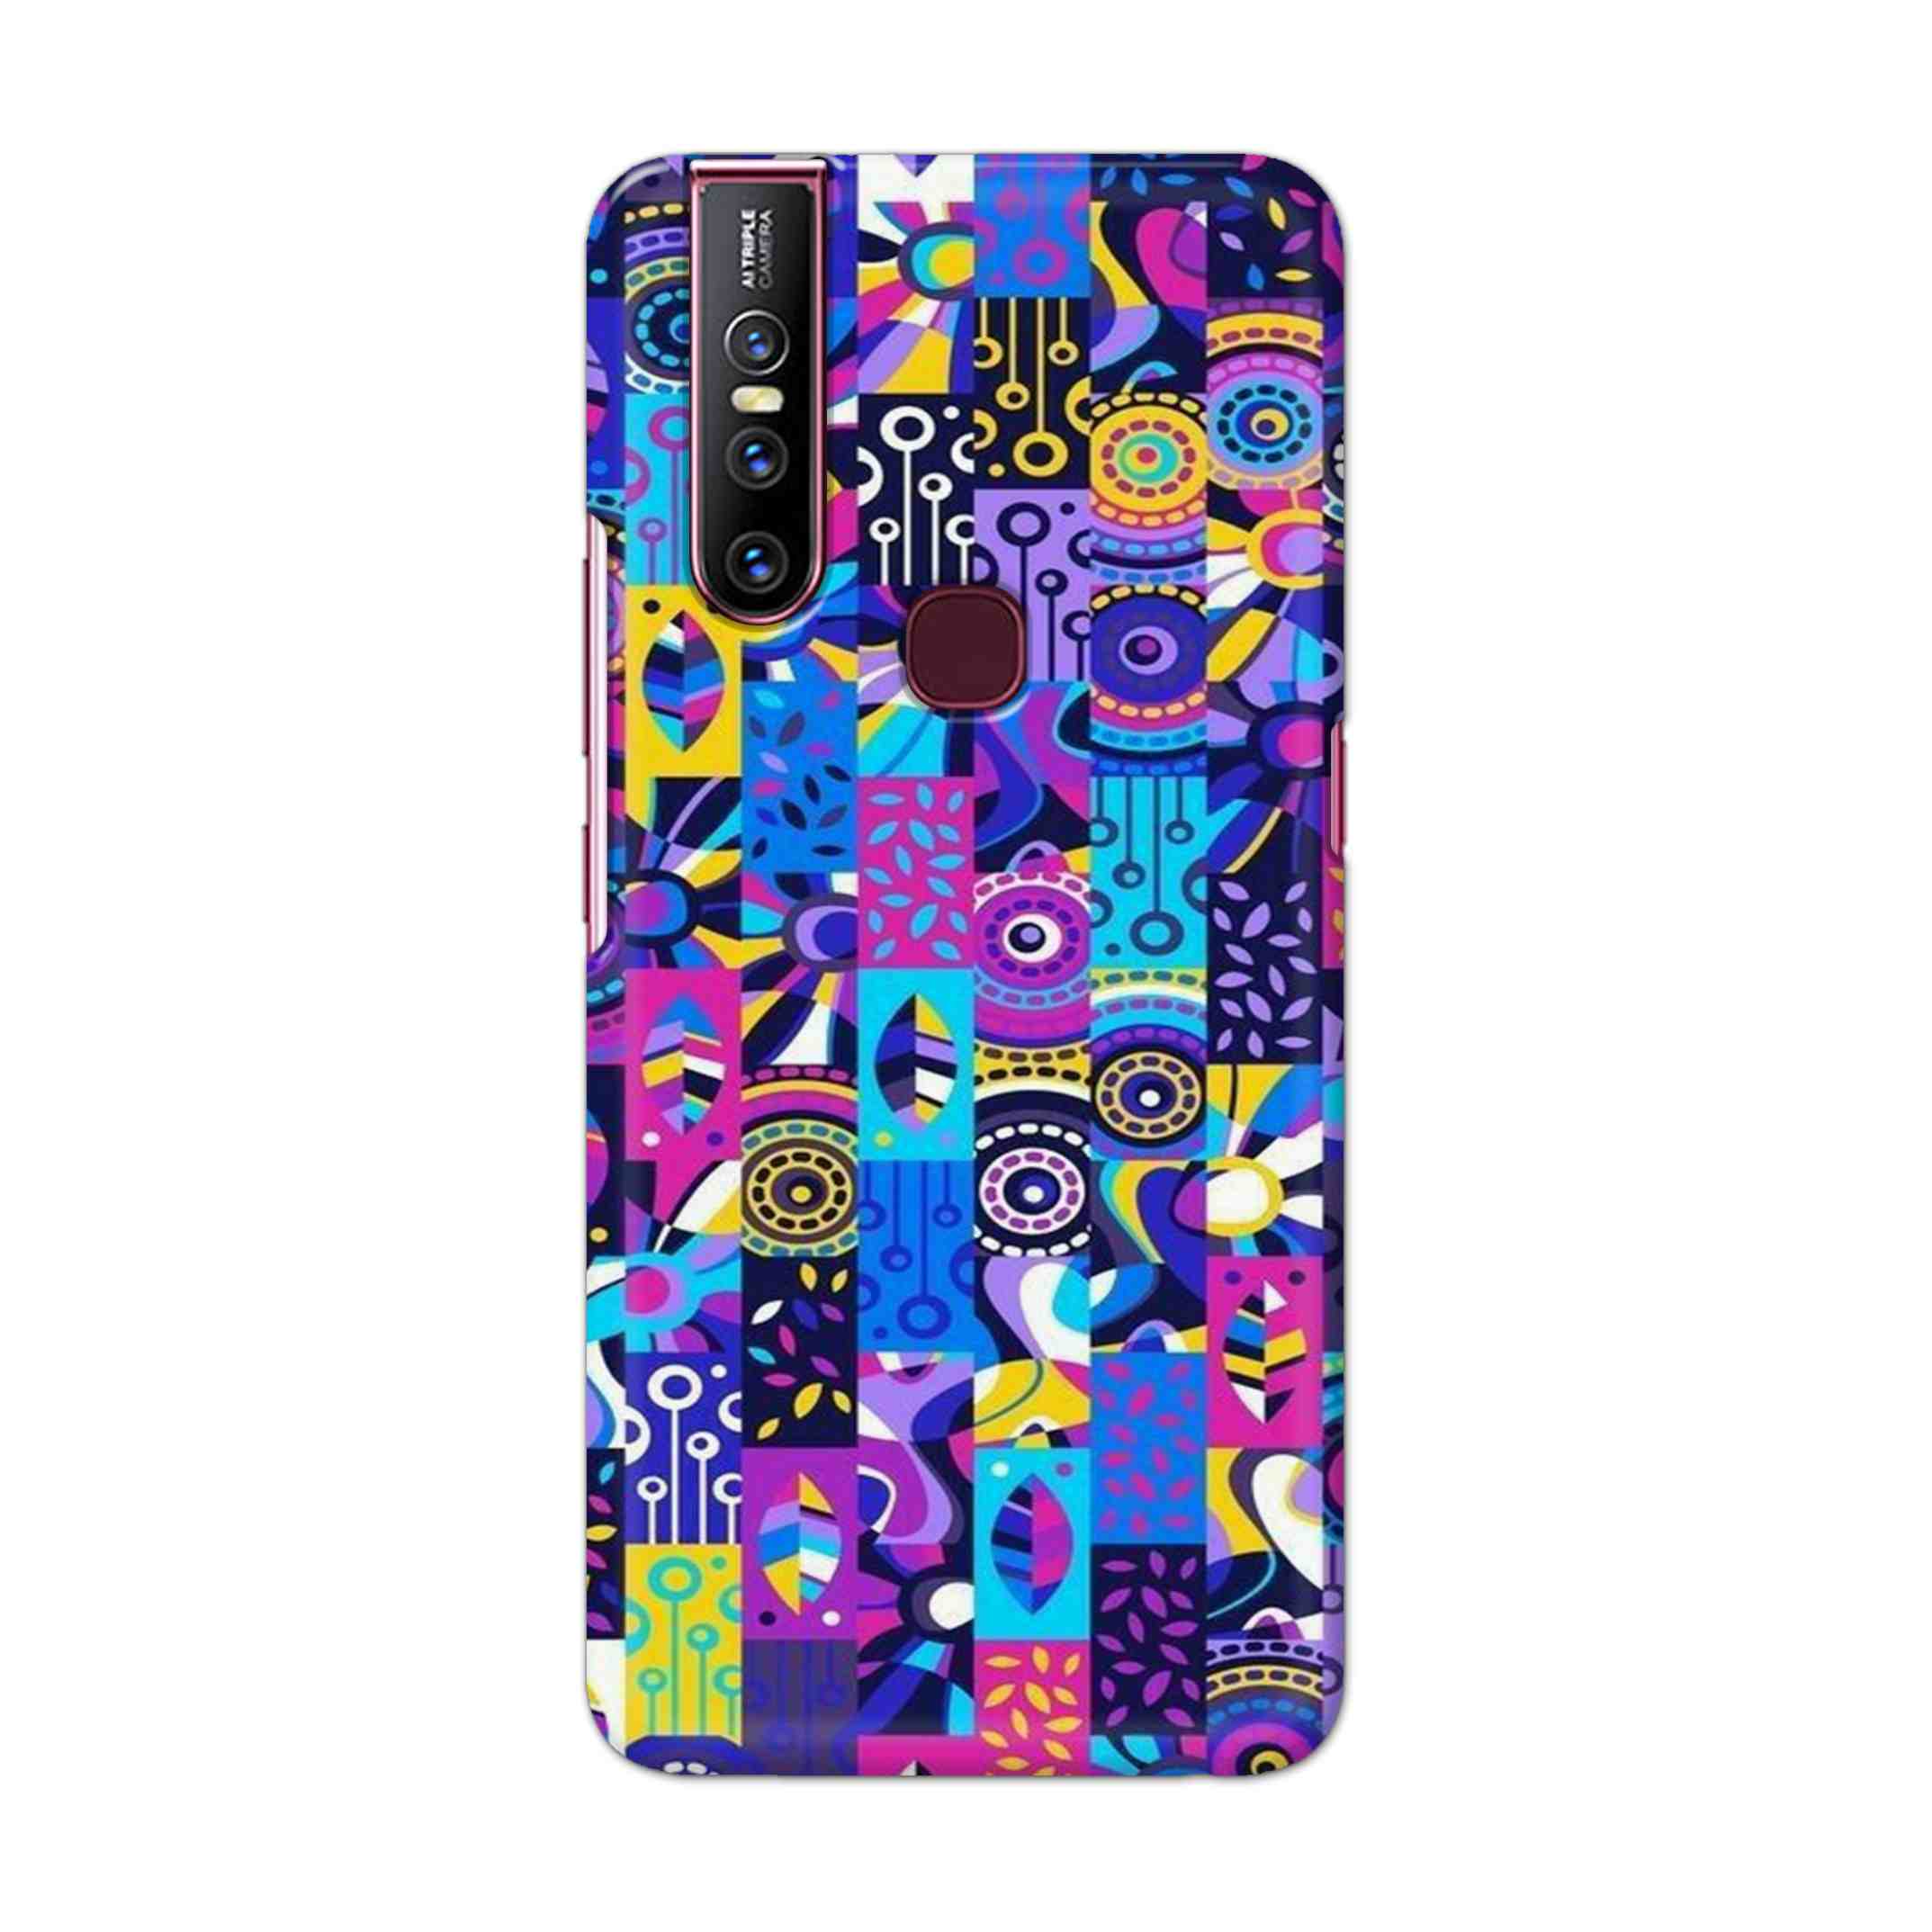 Buy Rainbow Art Hard Back Mobile Phone Case Cover For Vivo V15 Online